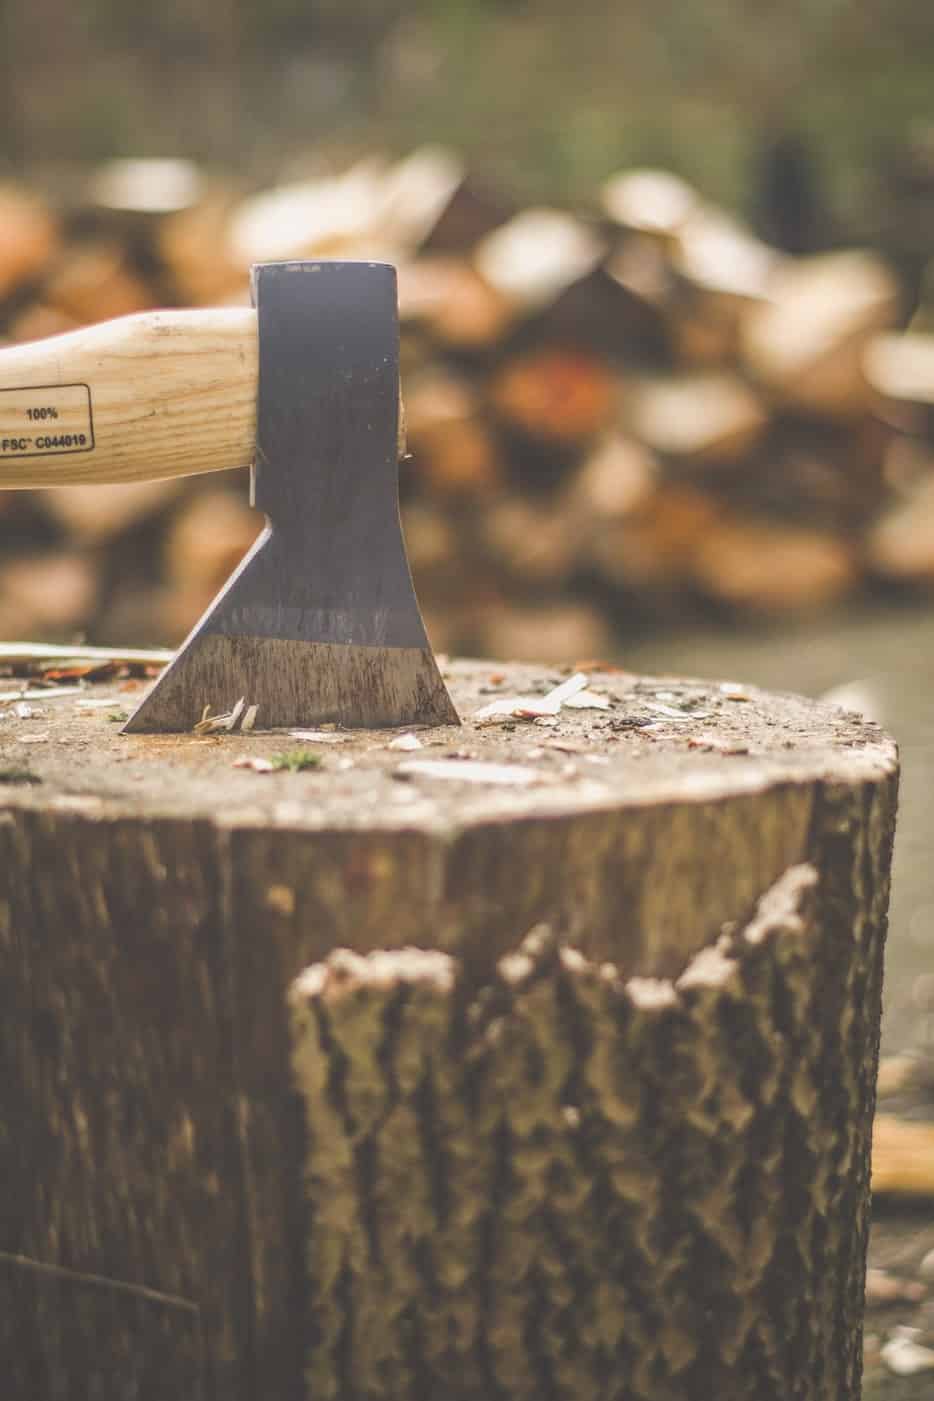 Best axes felling axe on wooden stump